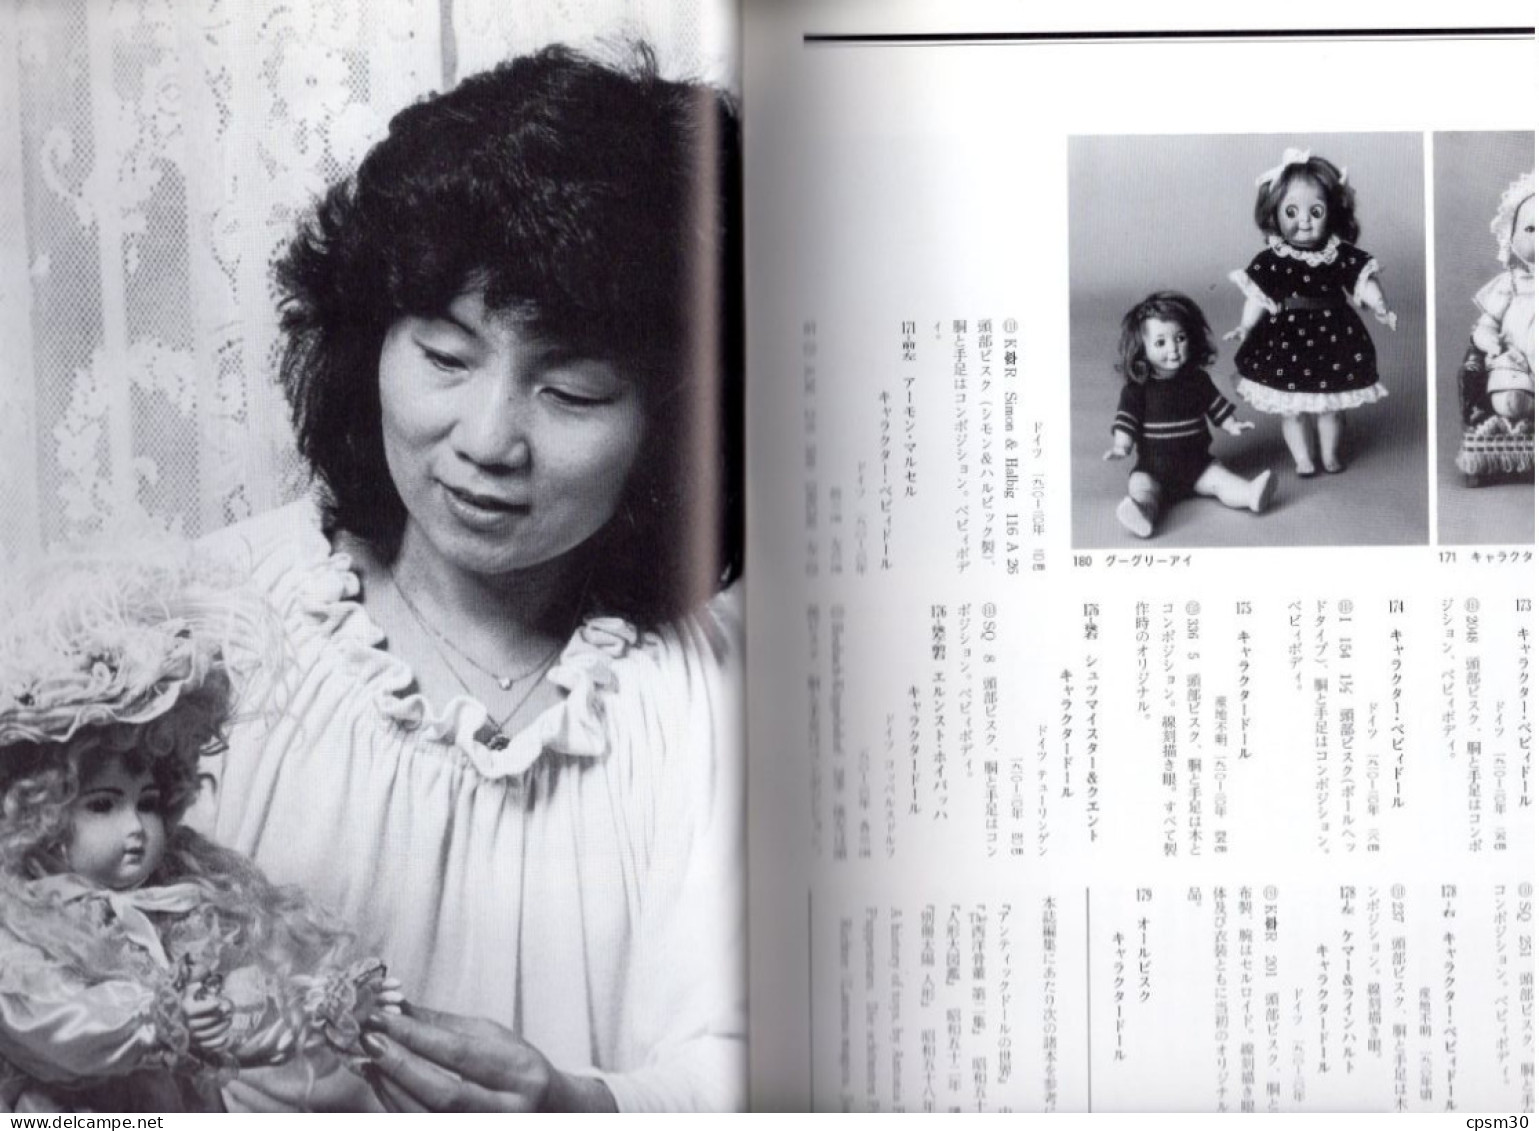 Livre, Catalogue De Réferences De Poupées, édition ?? JAPON ?? 160 Pages Environ 1980/90 ( 本の人形 ) - Encyclopédies